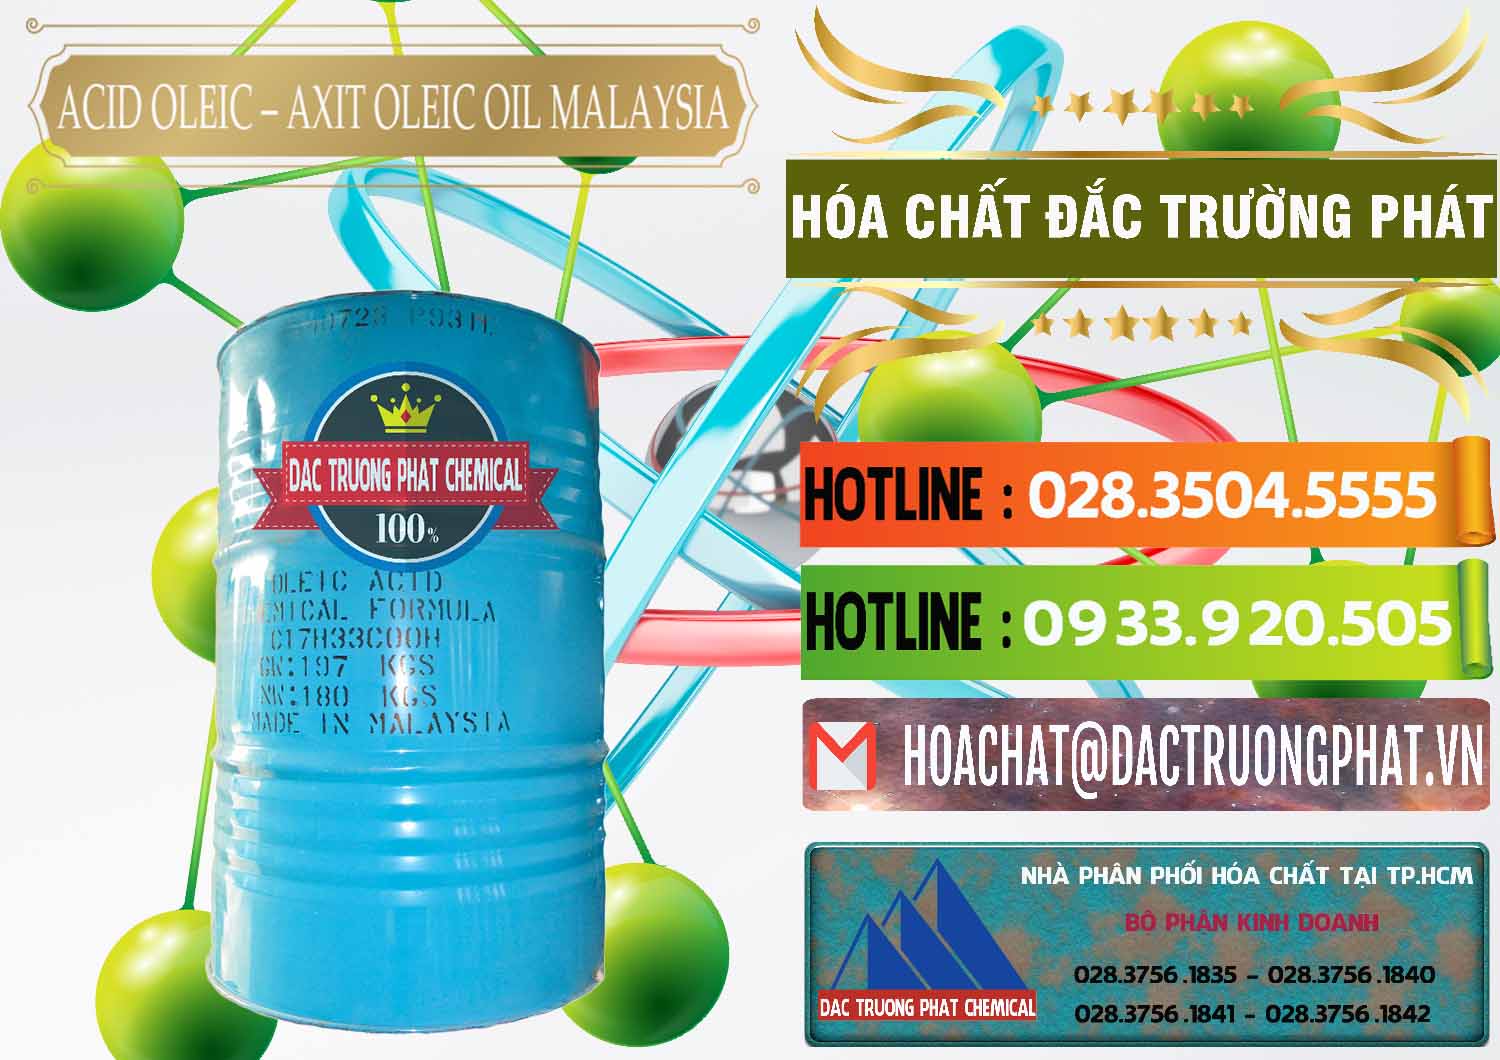 Chuyên bán & cung ứng Acid Oleic – Axit Oleic Oil Malaysia - 0013 - Cty chuyên phân phối và nhập khẩu hóa chất tại TP.HCM - cungcaphoachat.com.vn